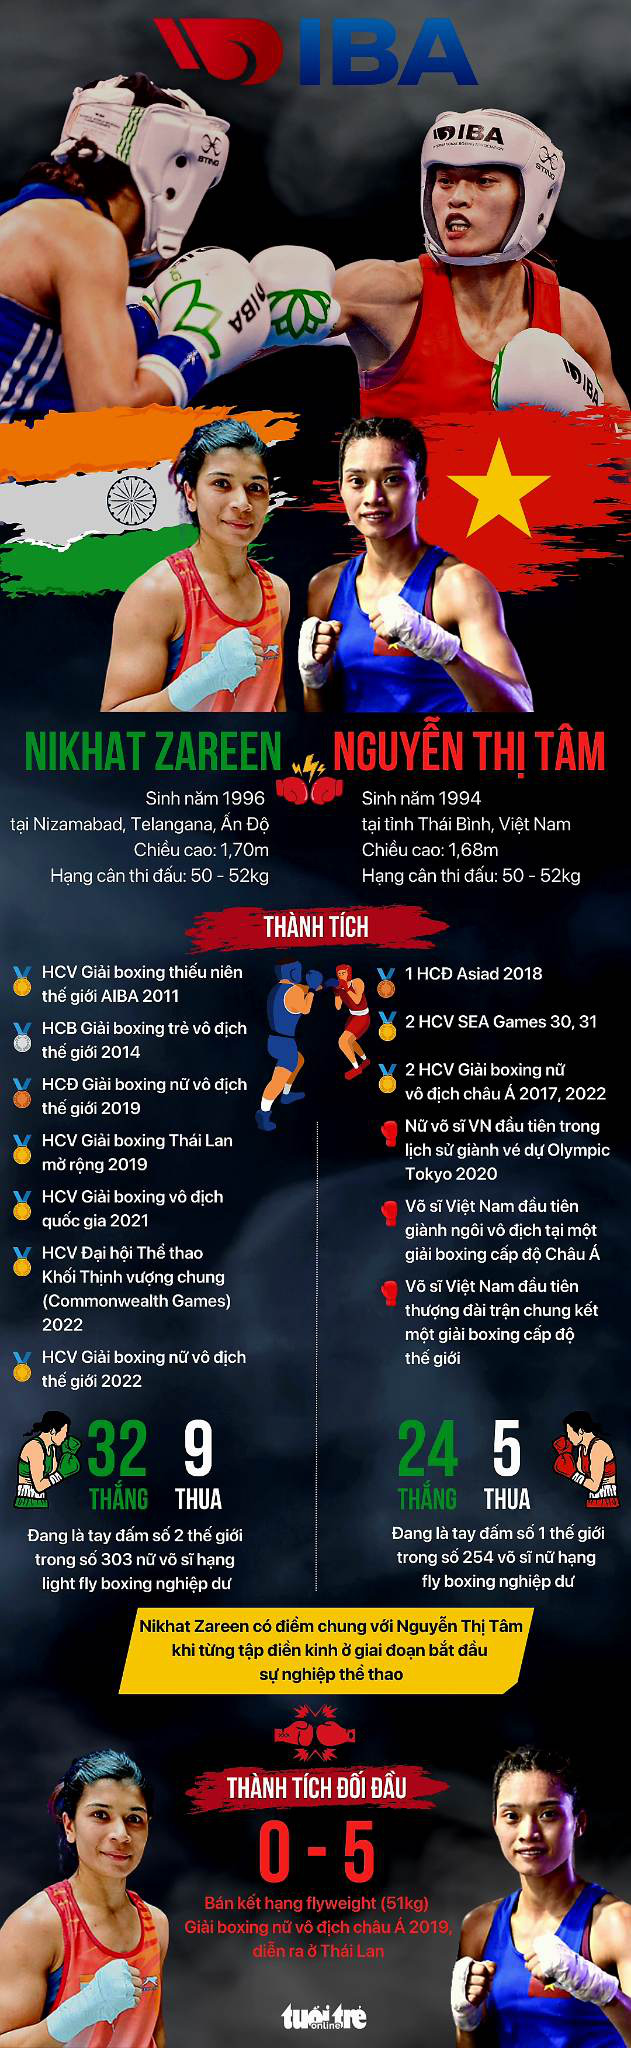 Thông tin trước trận chung kết giữa Nguyễn Thị Tâm và Nikhat Zareen - Đồ họa: AN BÌNH